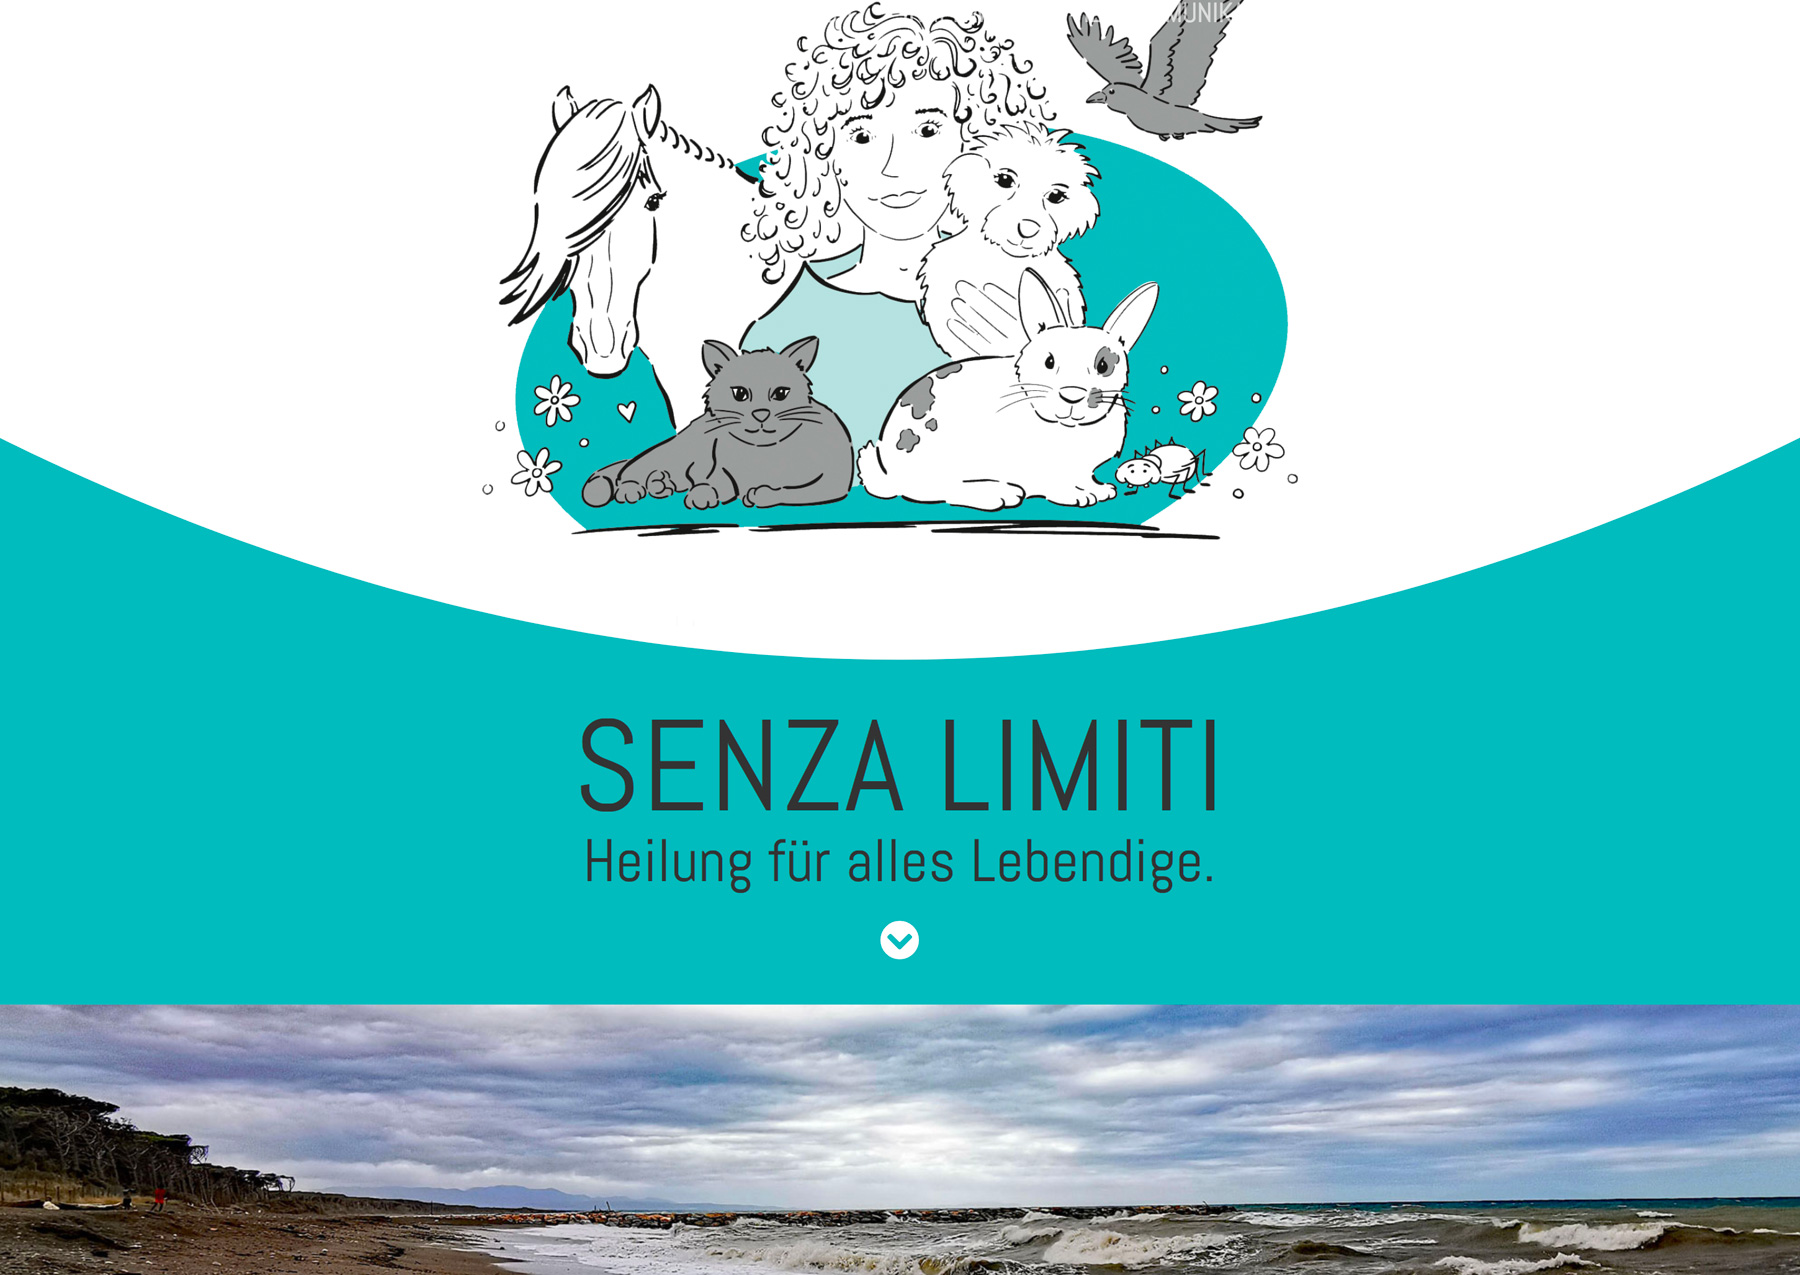 Webprojekt - neue Webseite erstellt für Senza Limiti